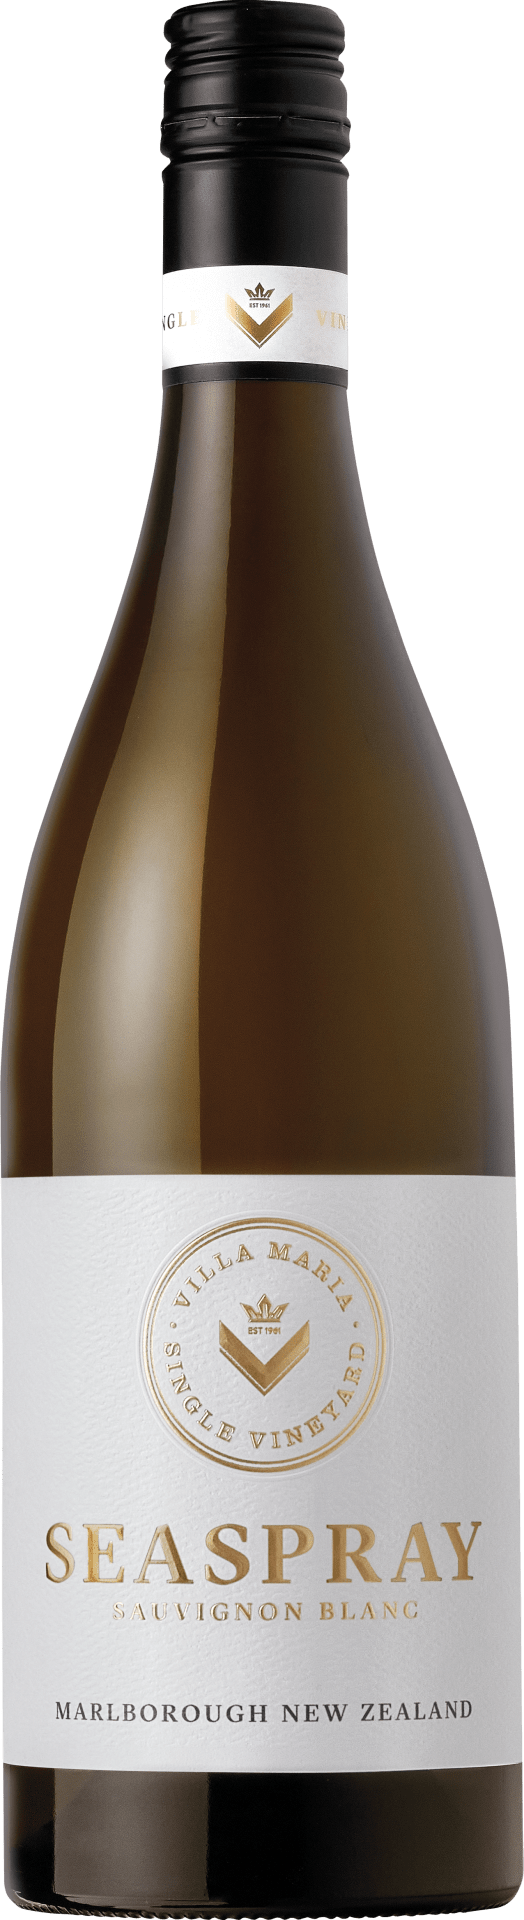 Single Vineyard Seaspray Sauvignon Blanc